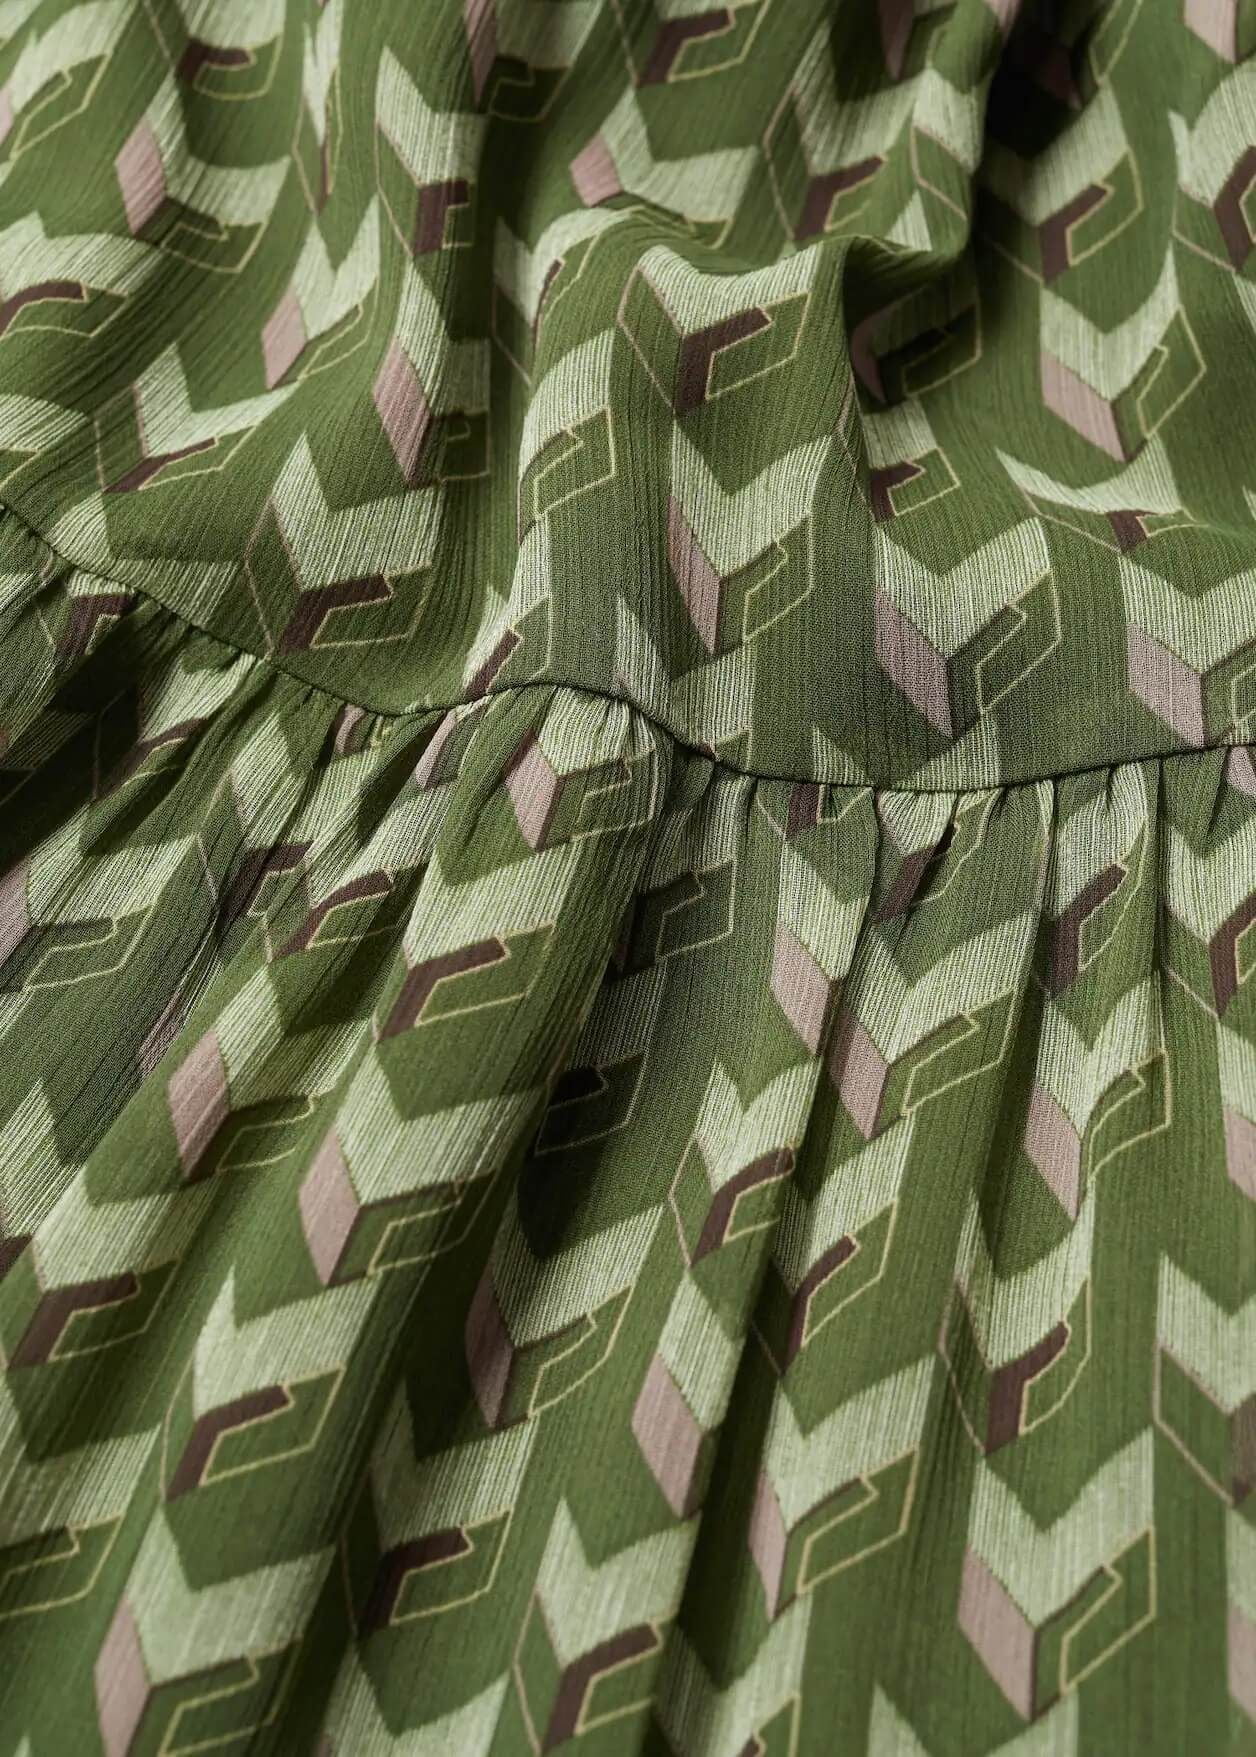 Đầm Nữ Mango Geometric Print Dress Green